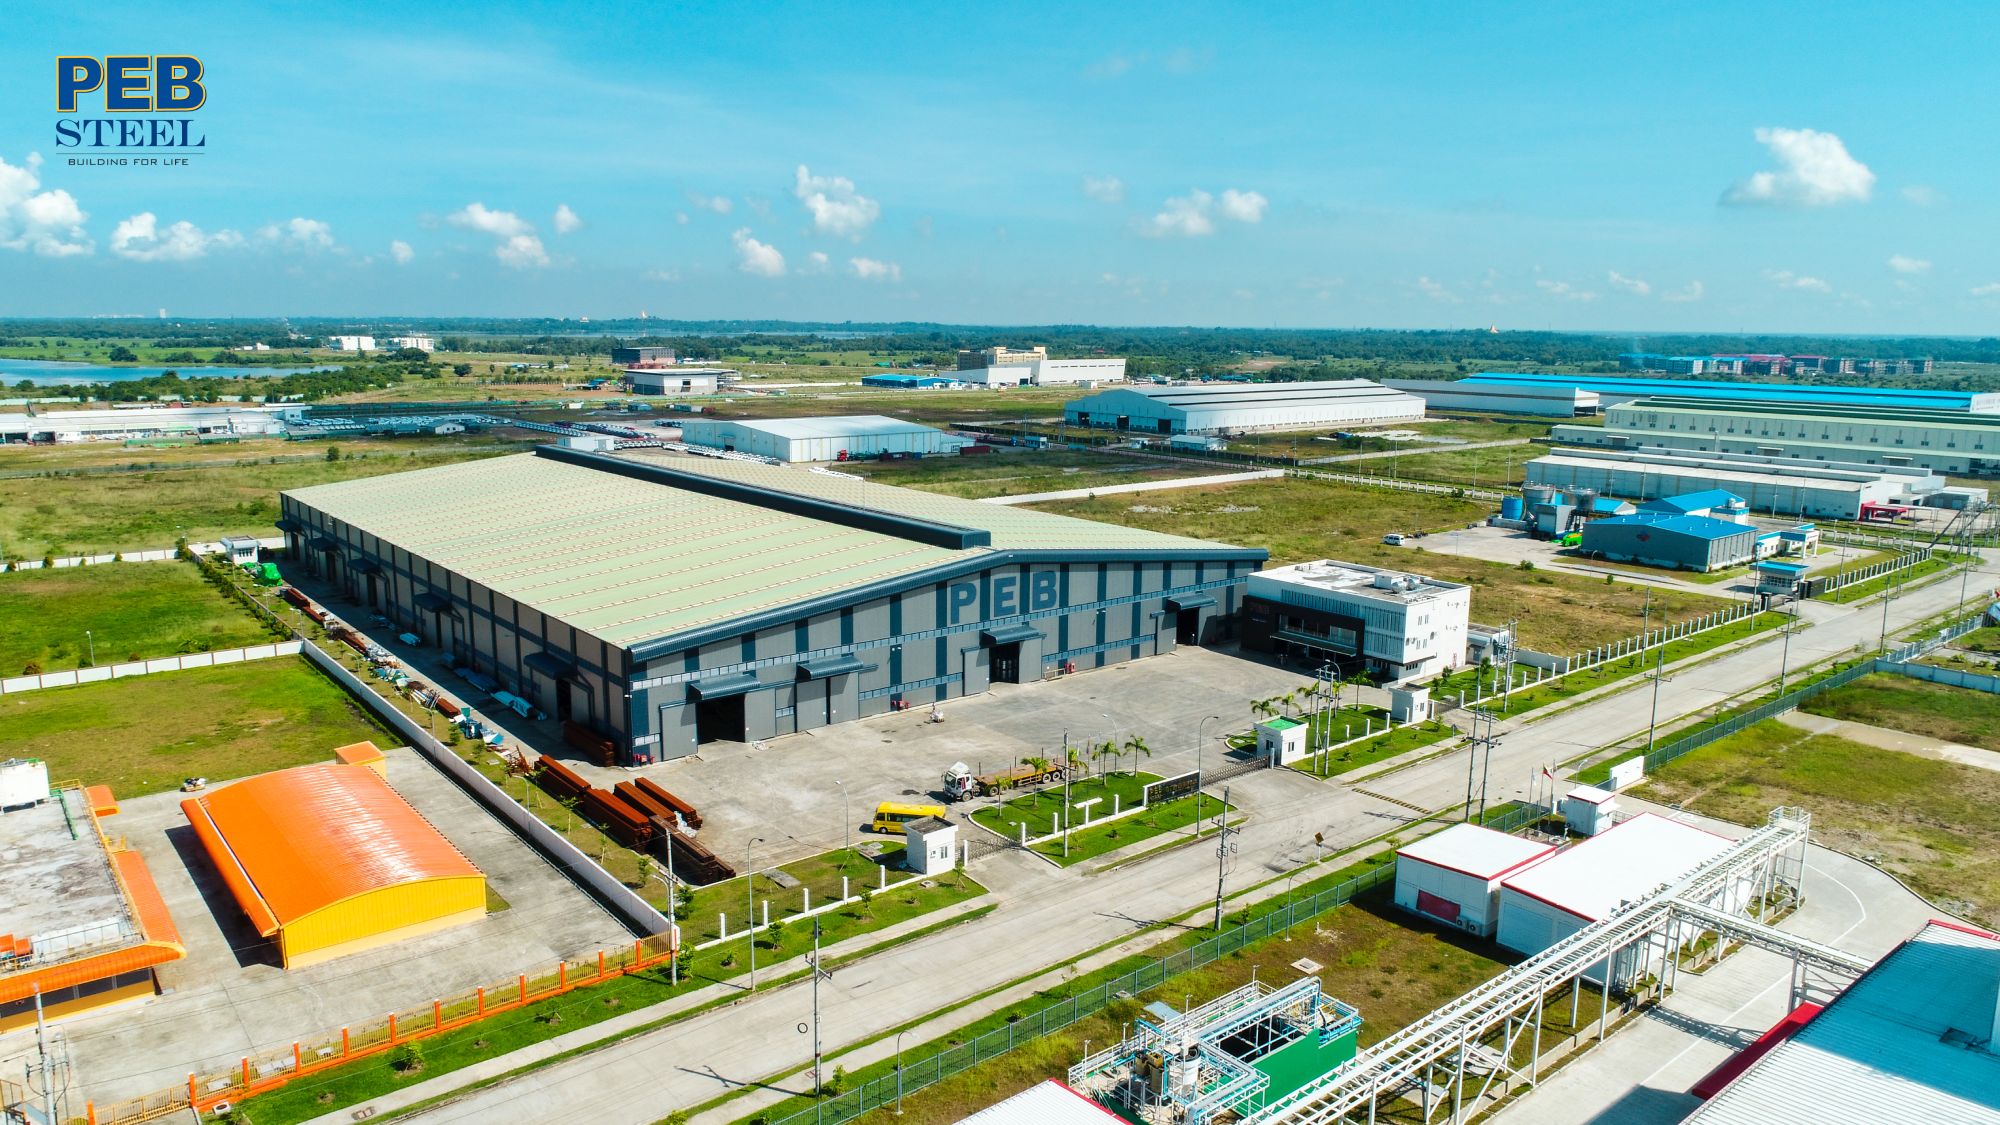 Pebsteel hiện có 7 nhà máy lớn với công suất 100,000MT / năm và sản lượng dự trữ lên đến 15,000MT